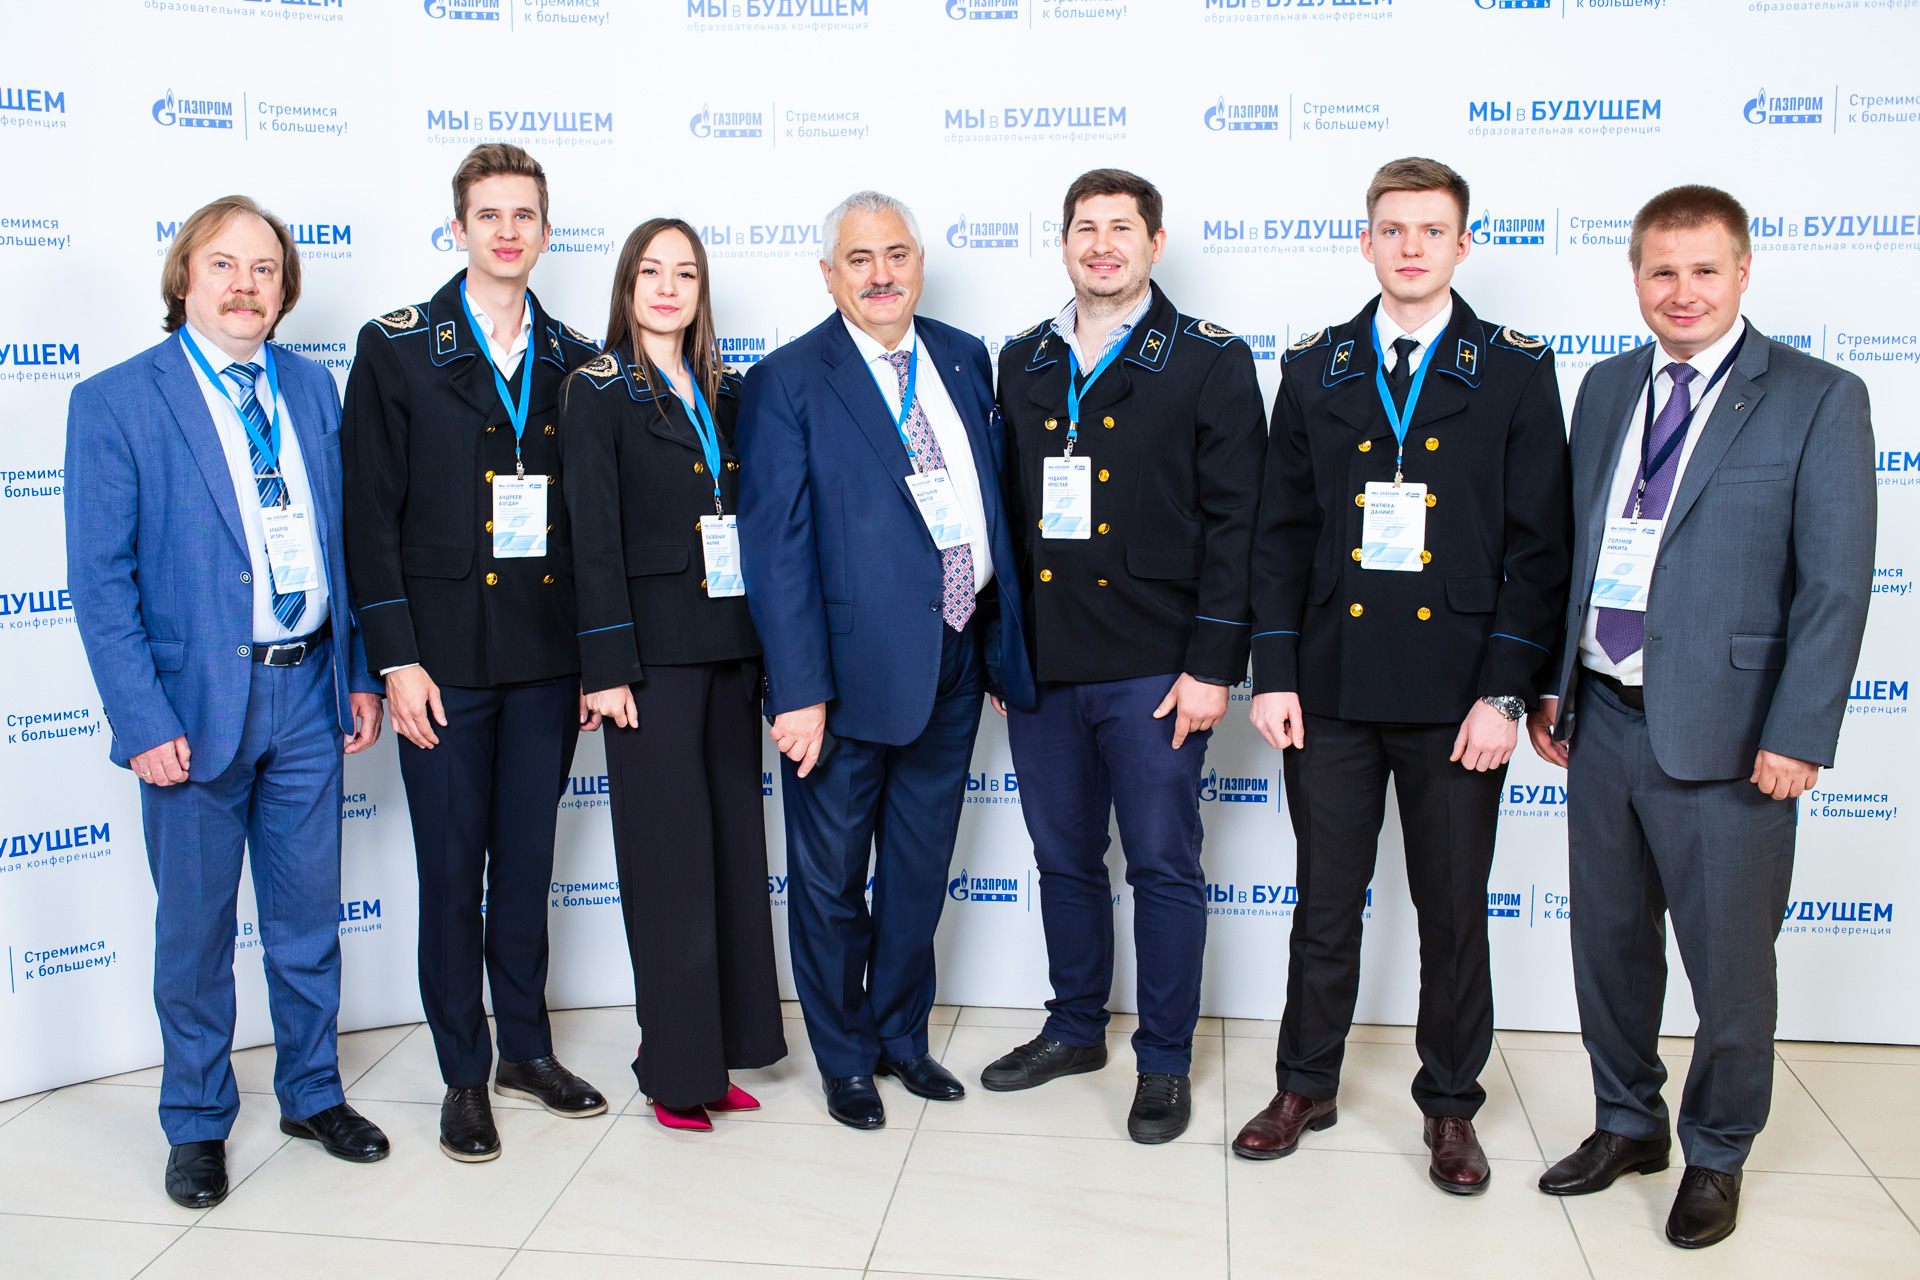 «Мы в будущем»: как «Газпром нефть» улучшает образование в вузах, «Газпром нефть» Денис Федотов, Проект «Мы в будущем», Be Cool, Be Cool 2019, WOW!HR 2019, WOW!HR, Номинанты WOWHR2020, готовить новые кадры, Всероссийская образовательная конференция